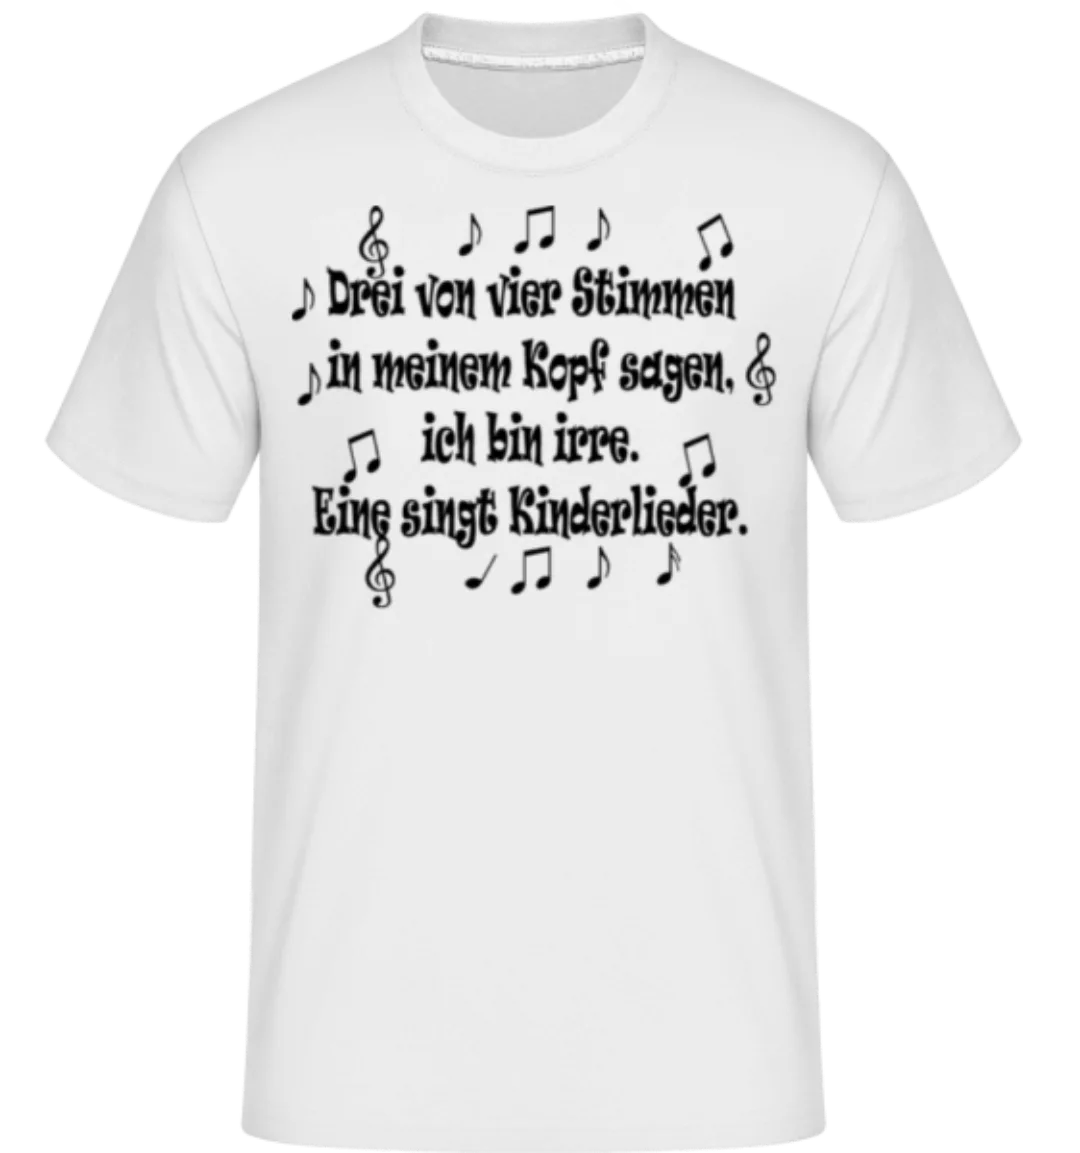 Die Stimmen In Meinem Kopf · Shirtinator Männer T-Shirt günstig online kaufen